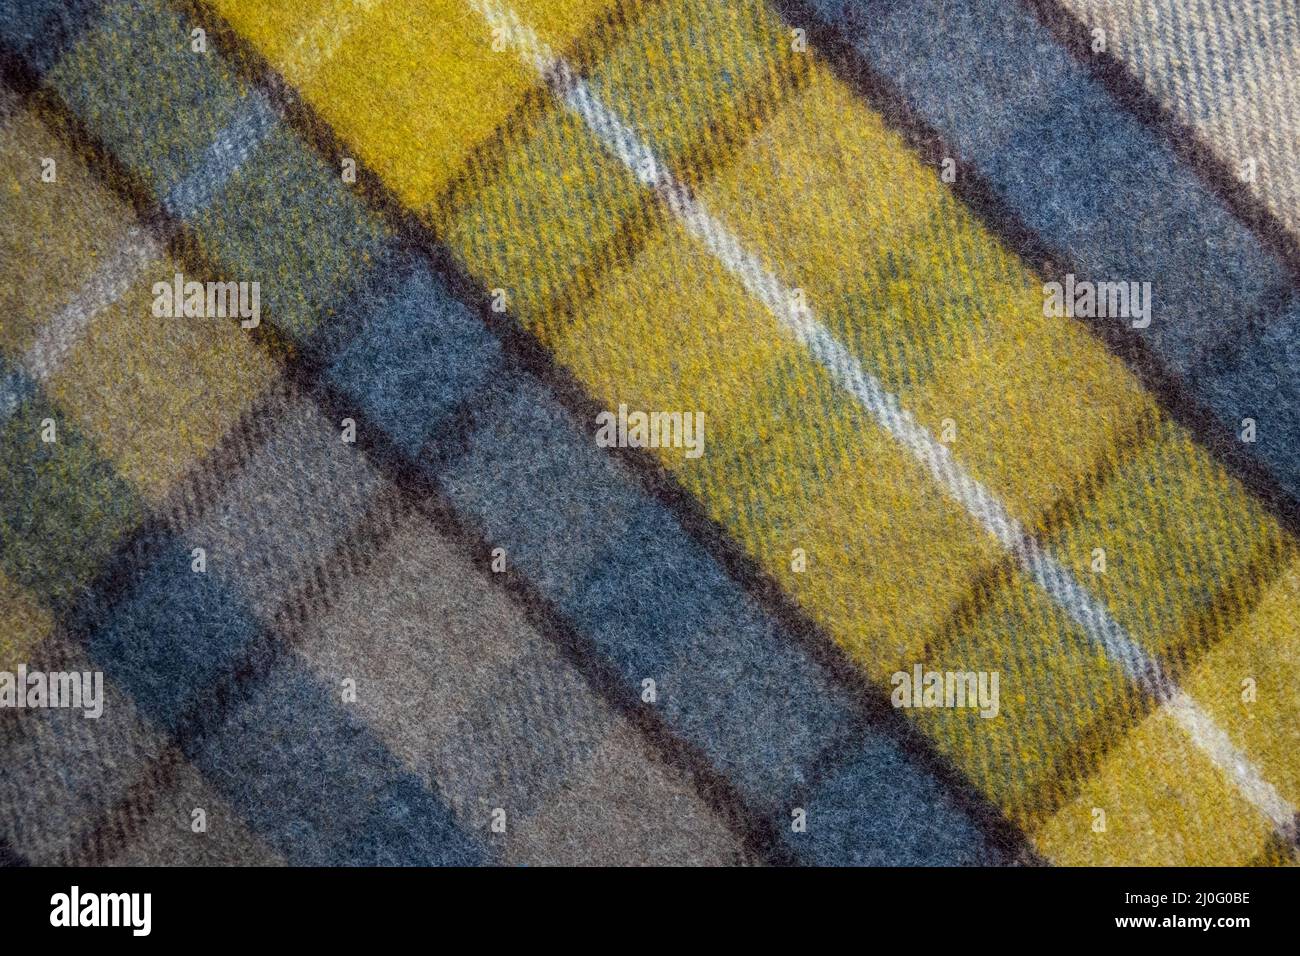 Antecedentes Textura de una manta de cuadros escoceses Foto de stock